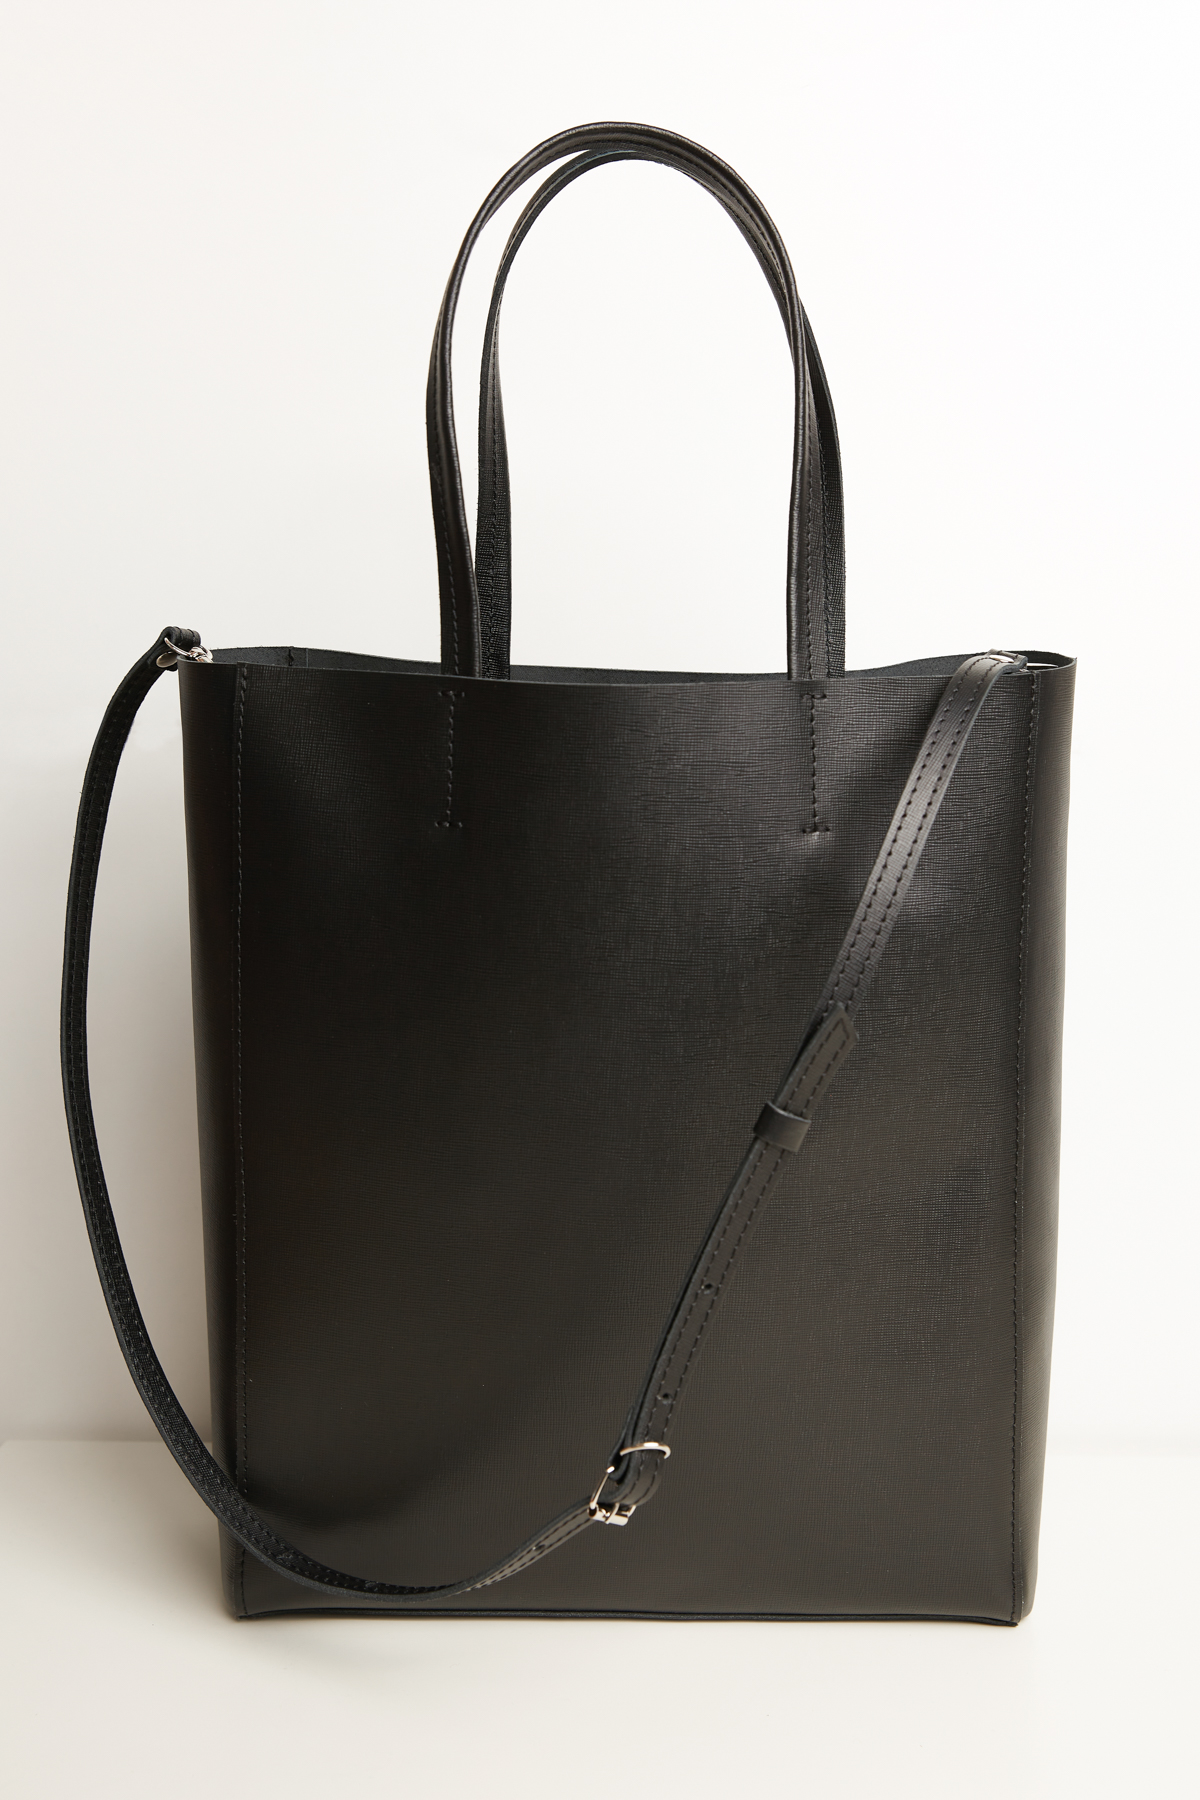 Black leather shopping bag, photo 1